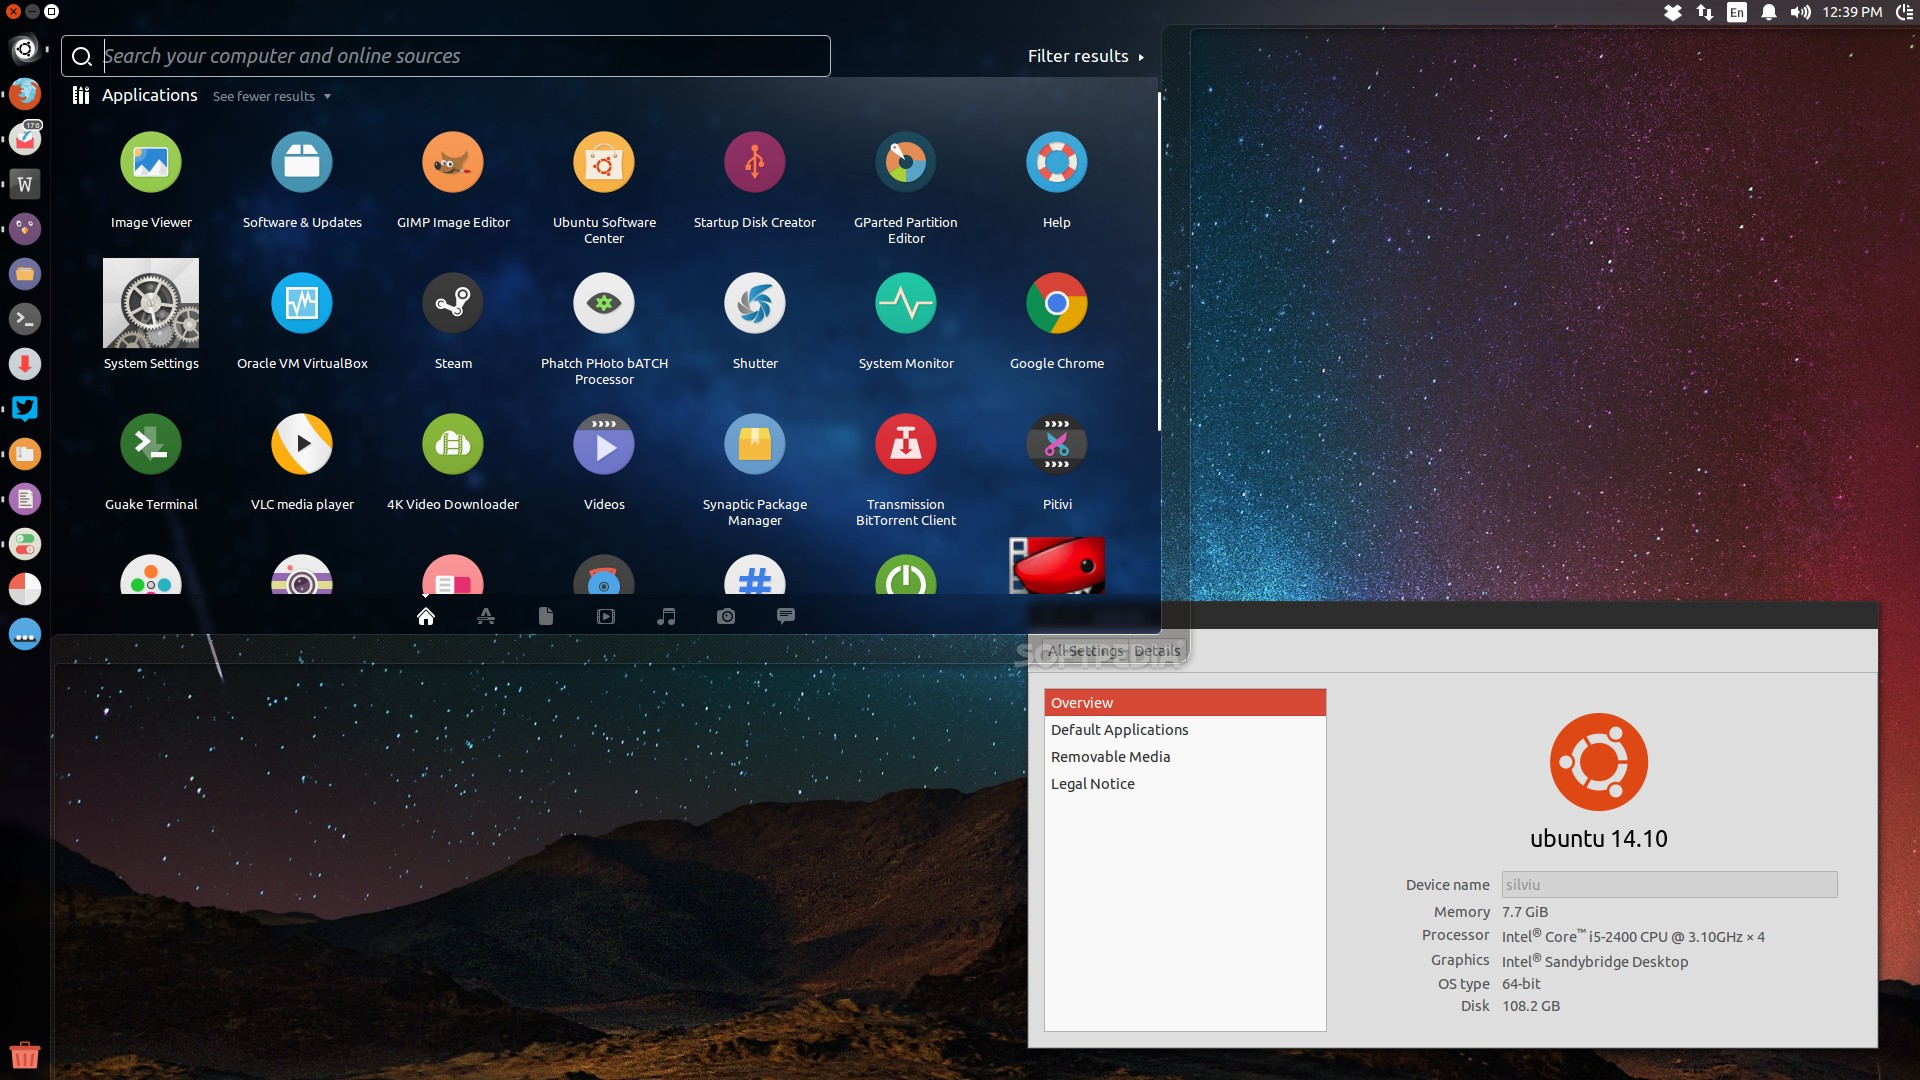 Apps to Install on Ubuntu